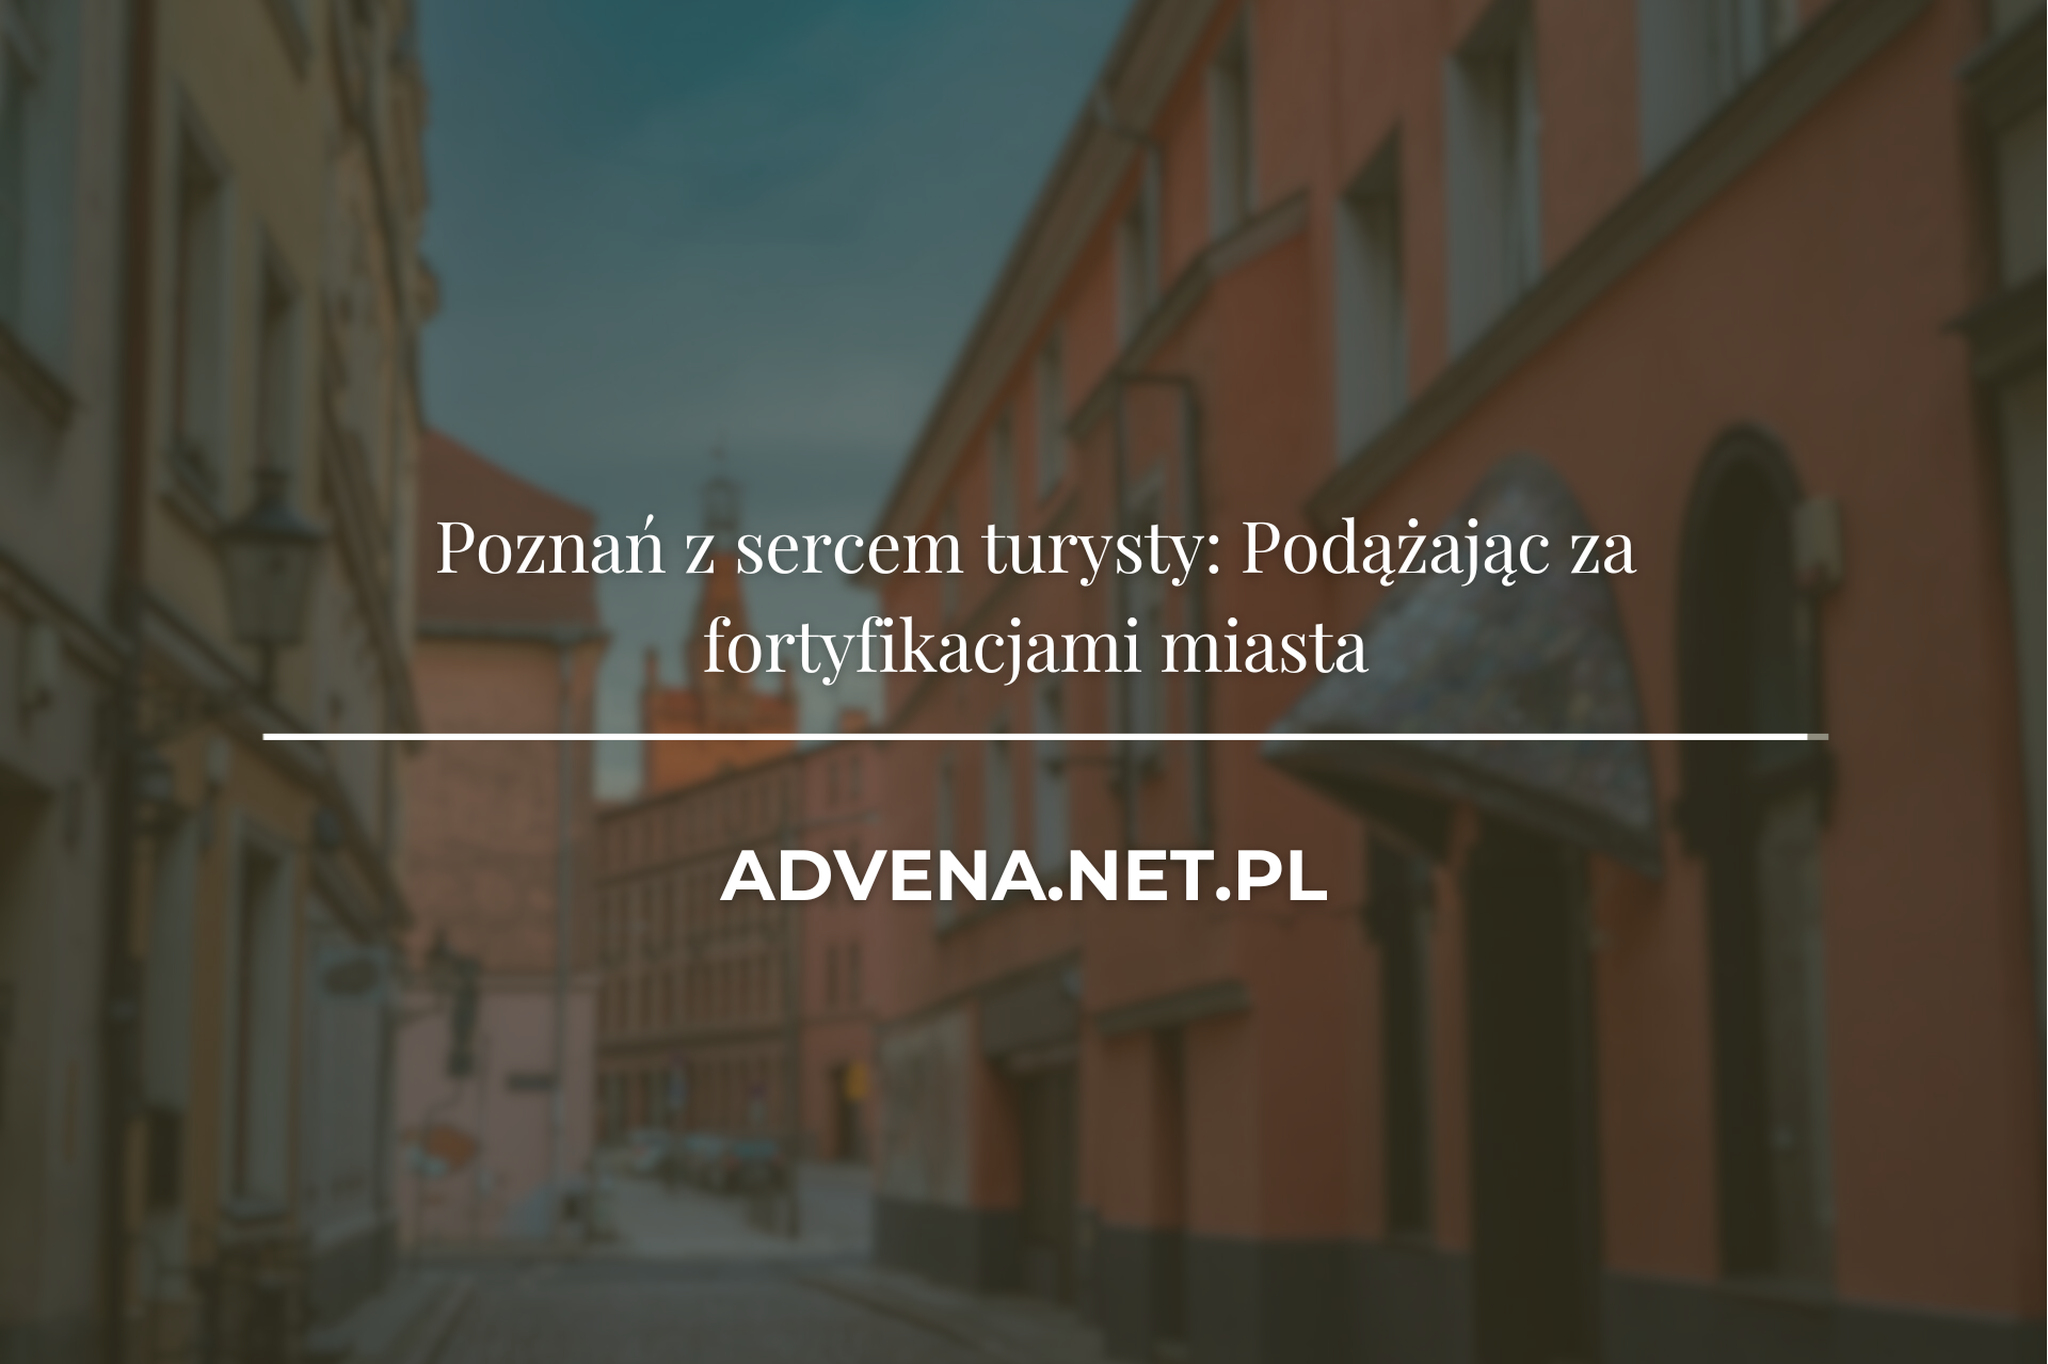 Poznań z sercem turysty: Podążając za fortyfikacjami miasta